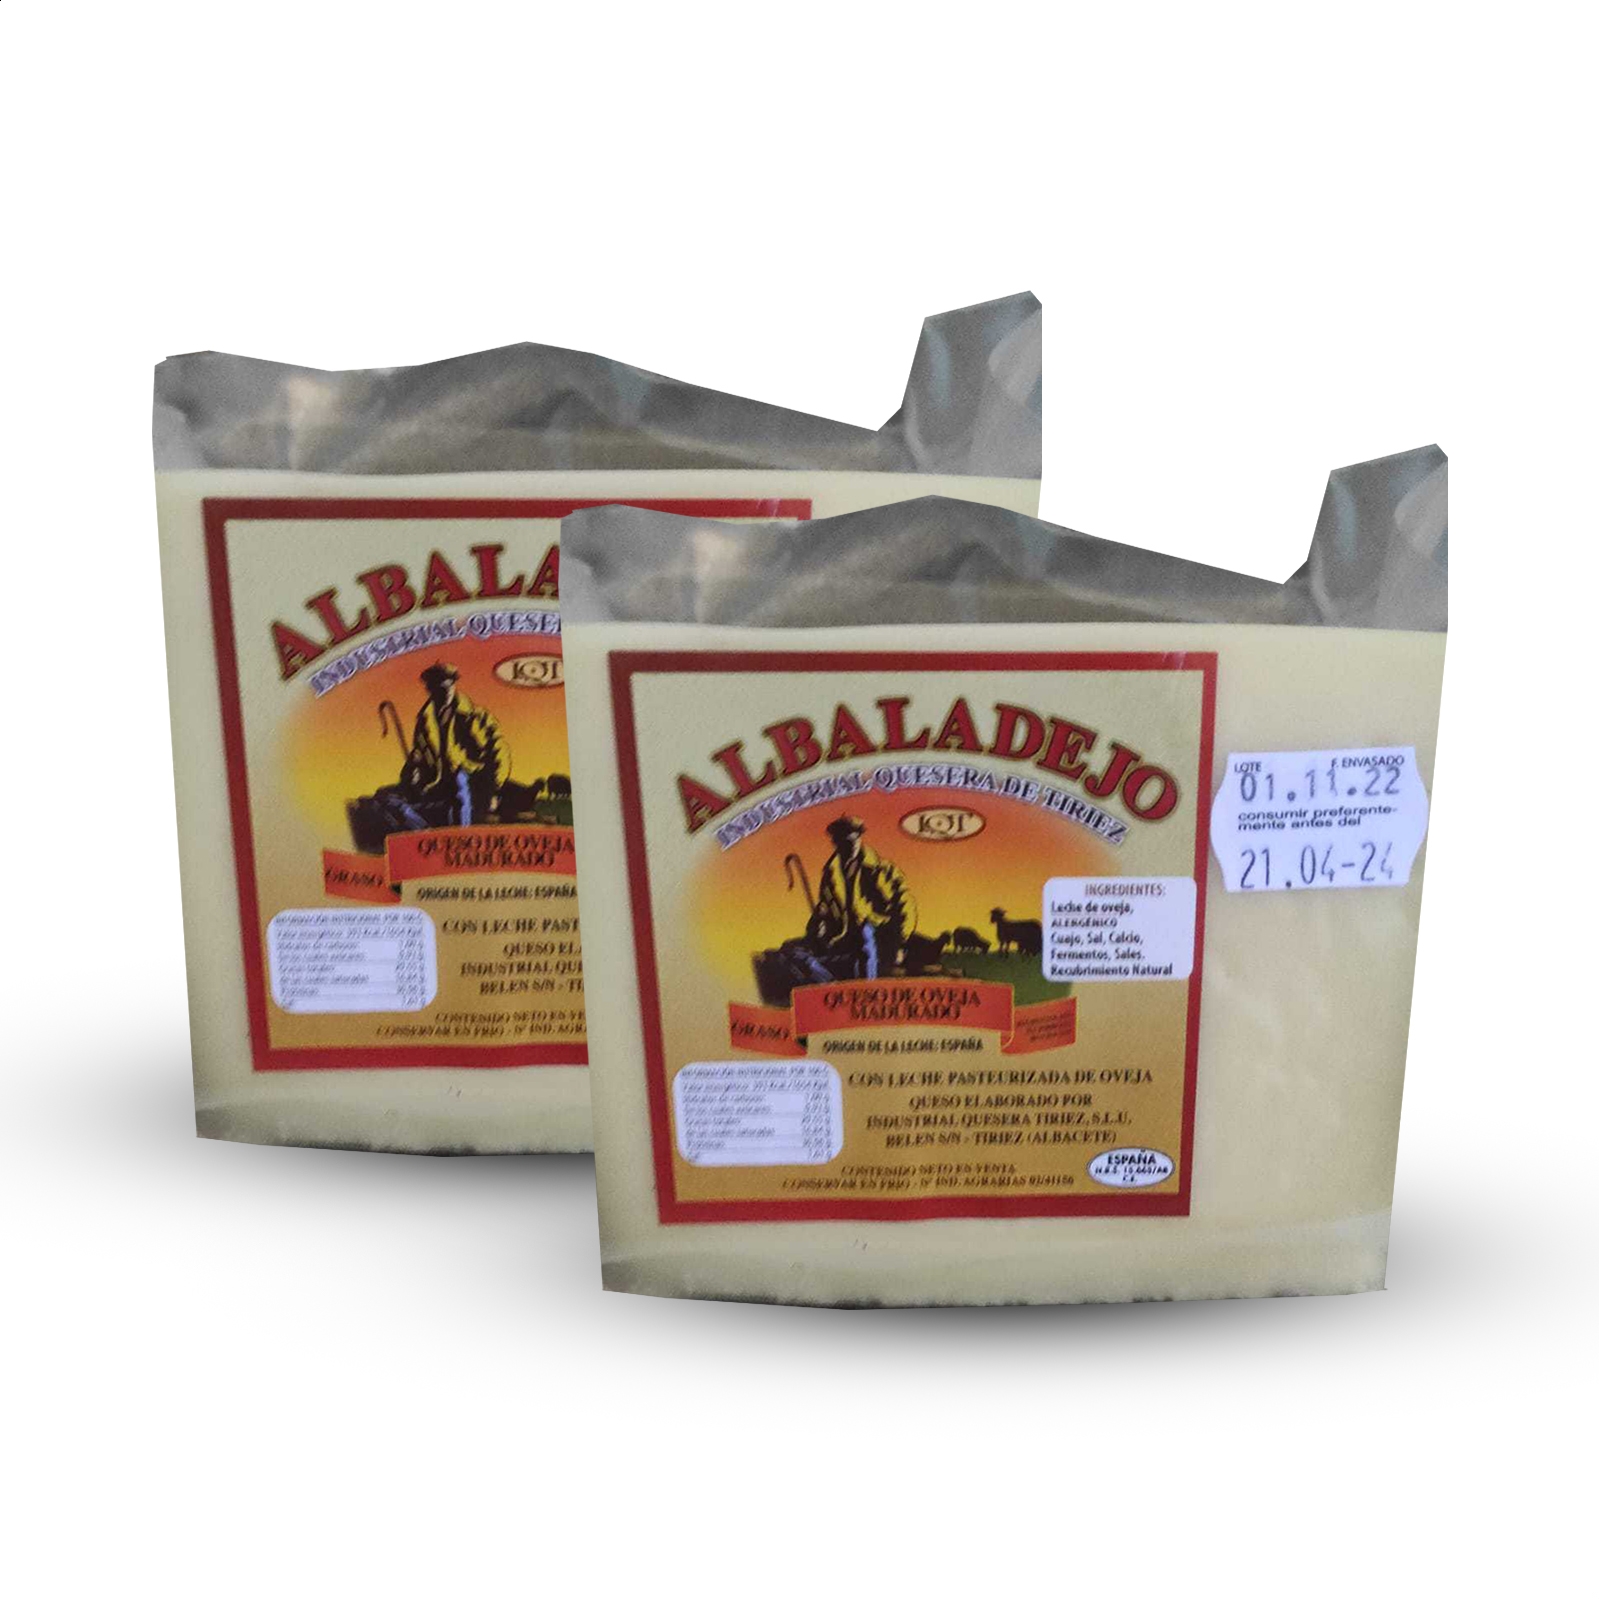 Industrial Quesera Tiriez - Albadalejo queso madurado de oveja de leche pasteurizada 650g, 2uds